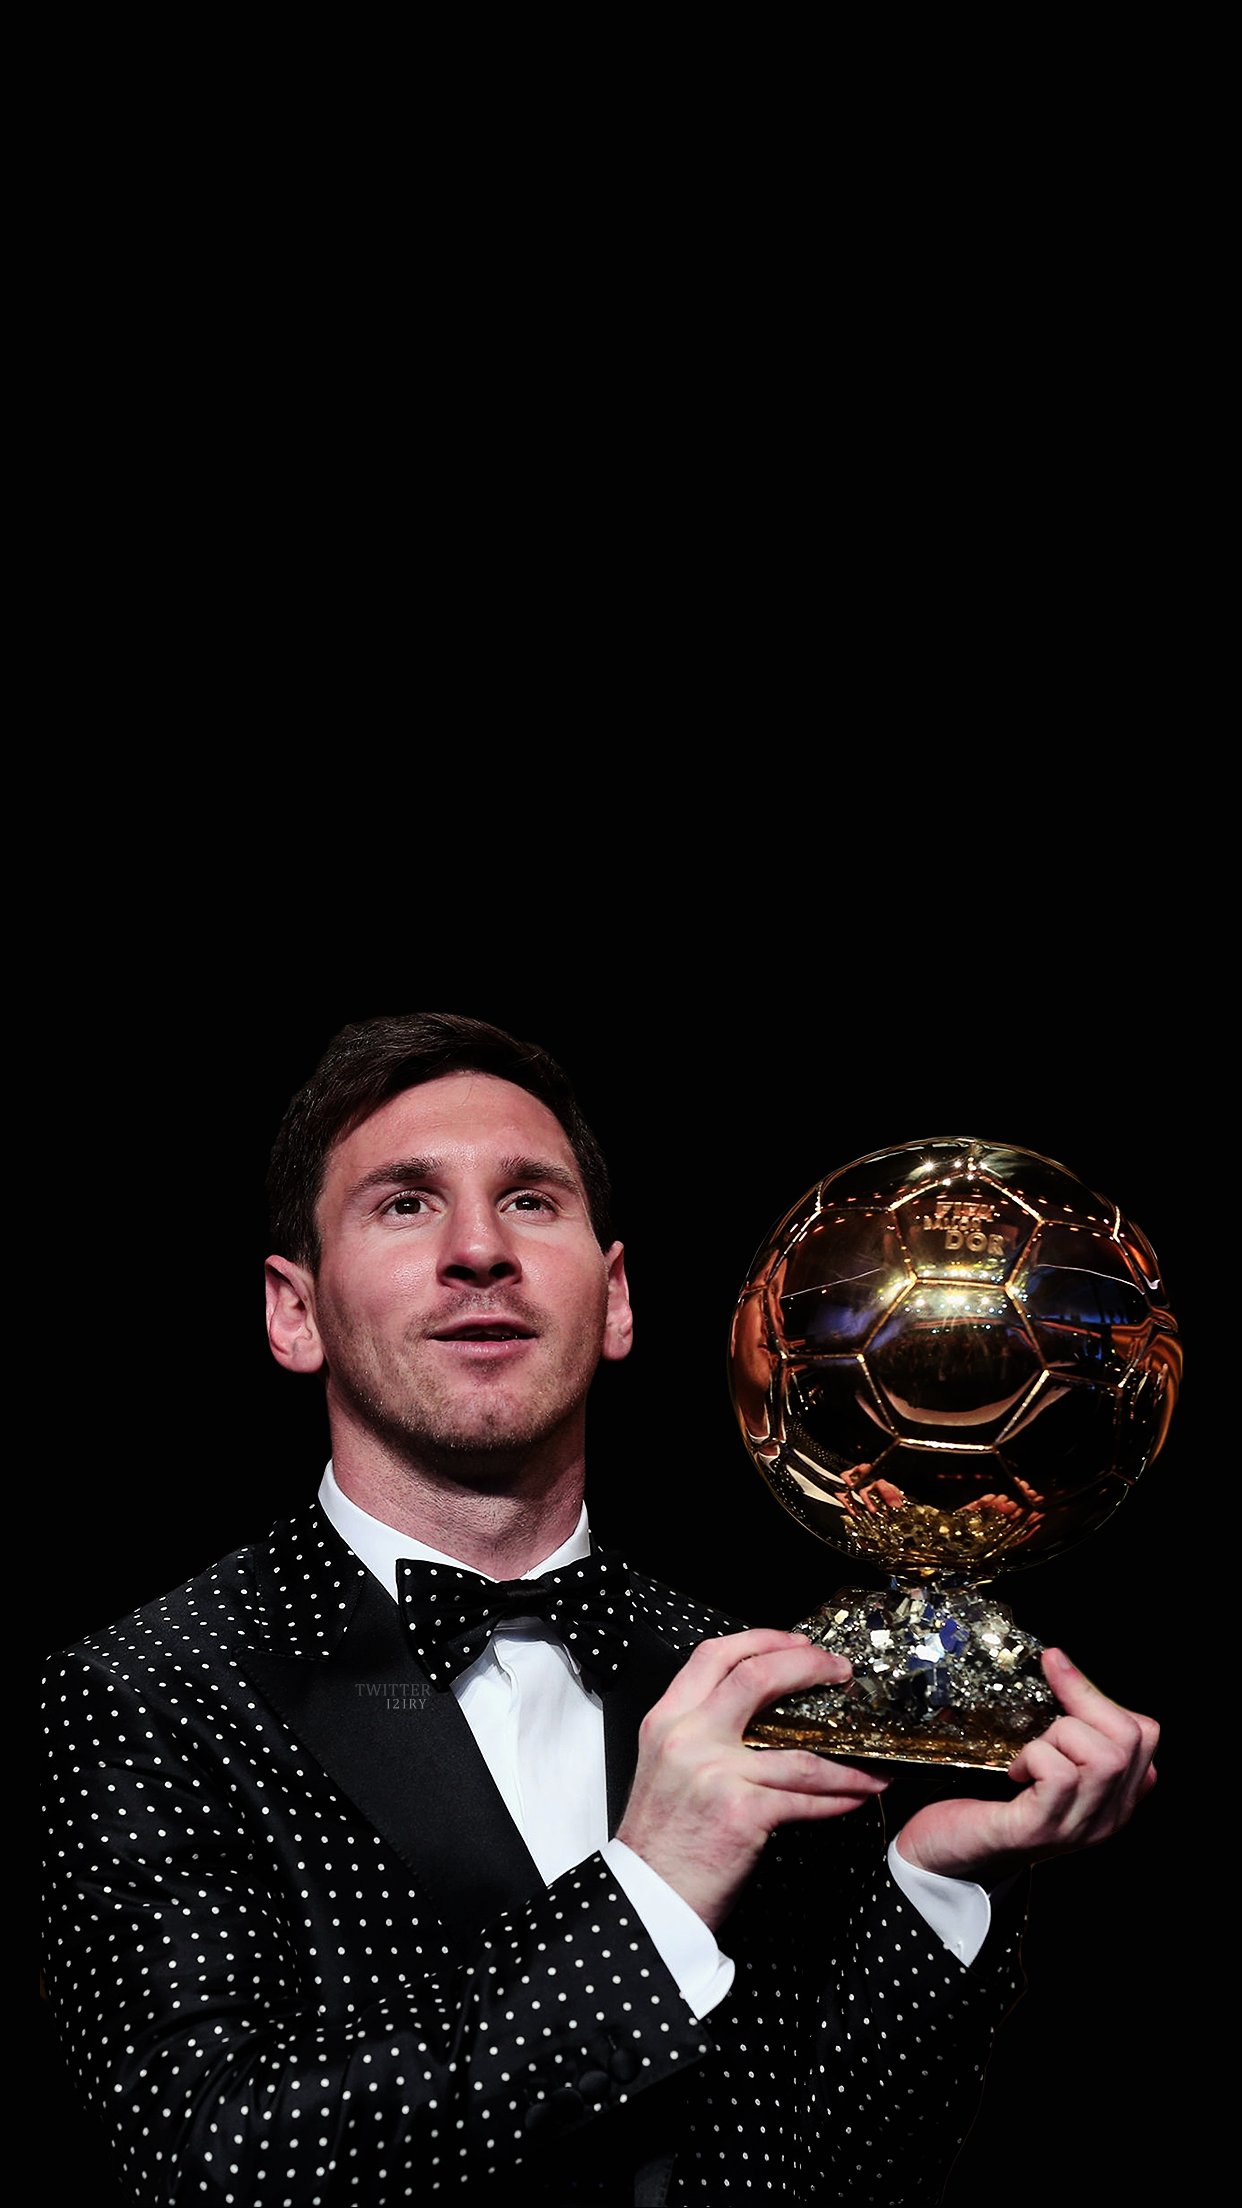 Hình nền Lionel Messi đủ sức khiến fan cuồng bóng đá trầm trồ khen ngợi. Không bao giờ là quá muộn để bổ sung thêm những bức ảnh mới nhất của huyền thoại bóng đá này cho bộ sưu tập của bạn.